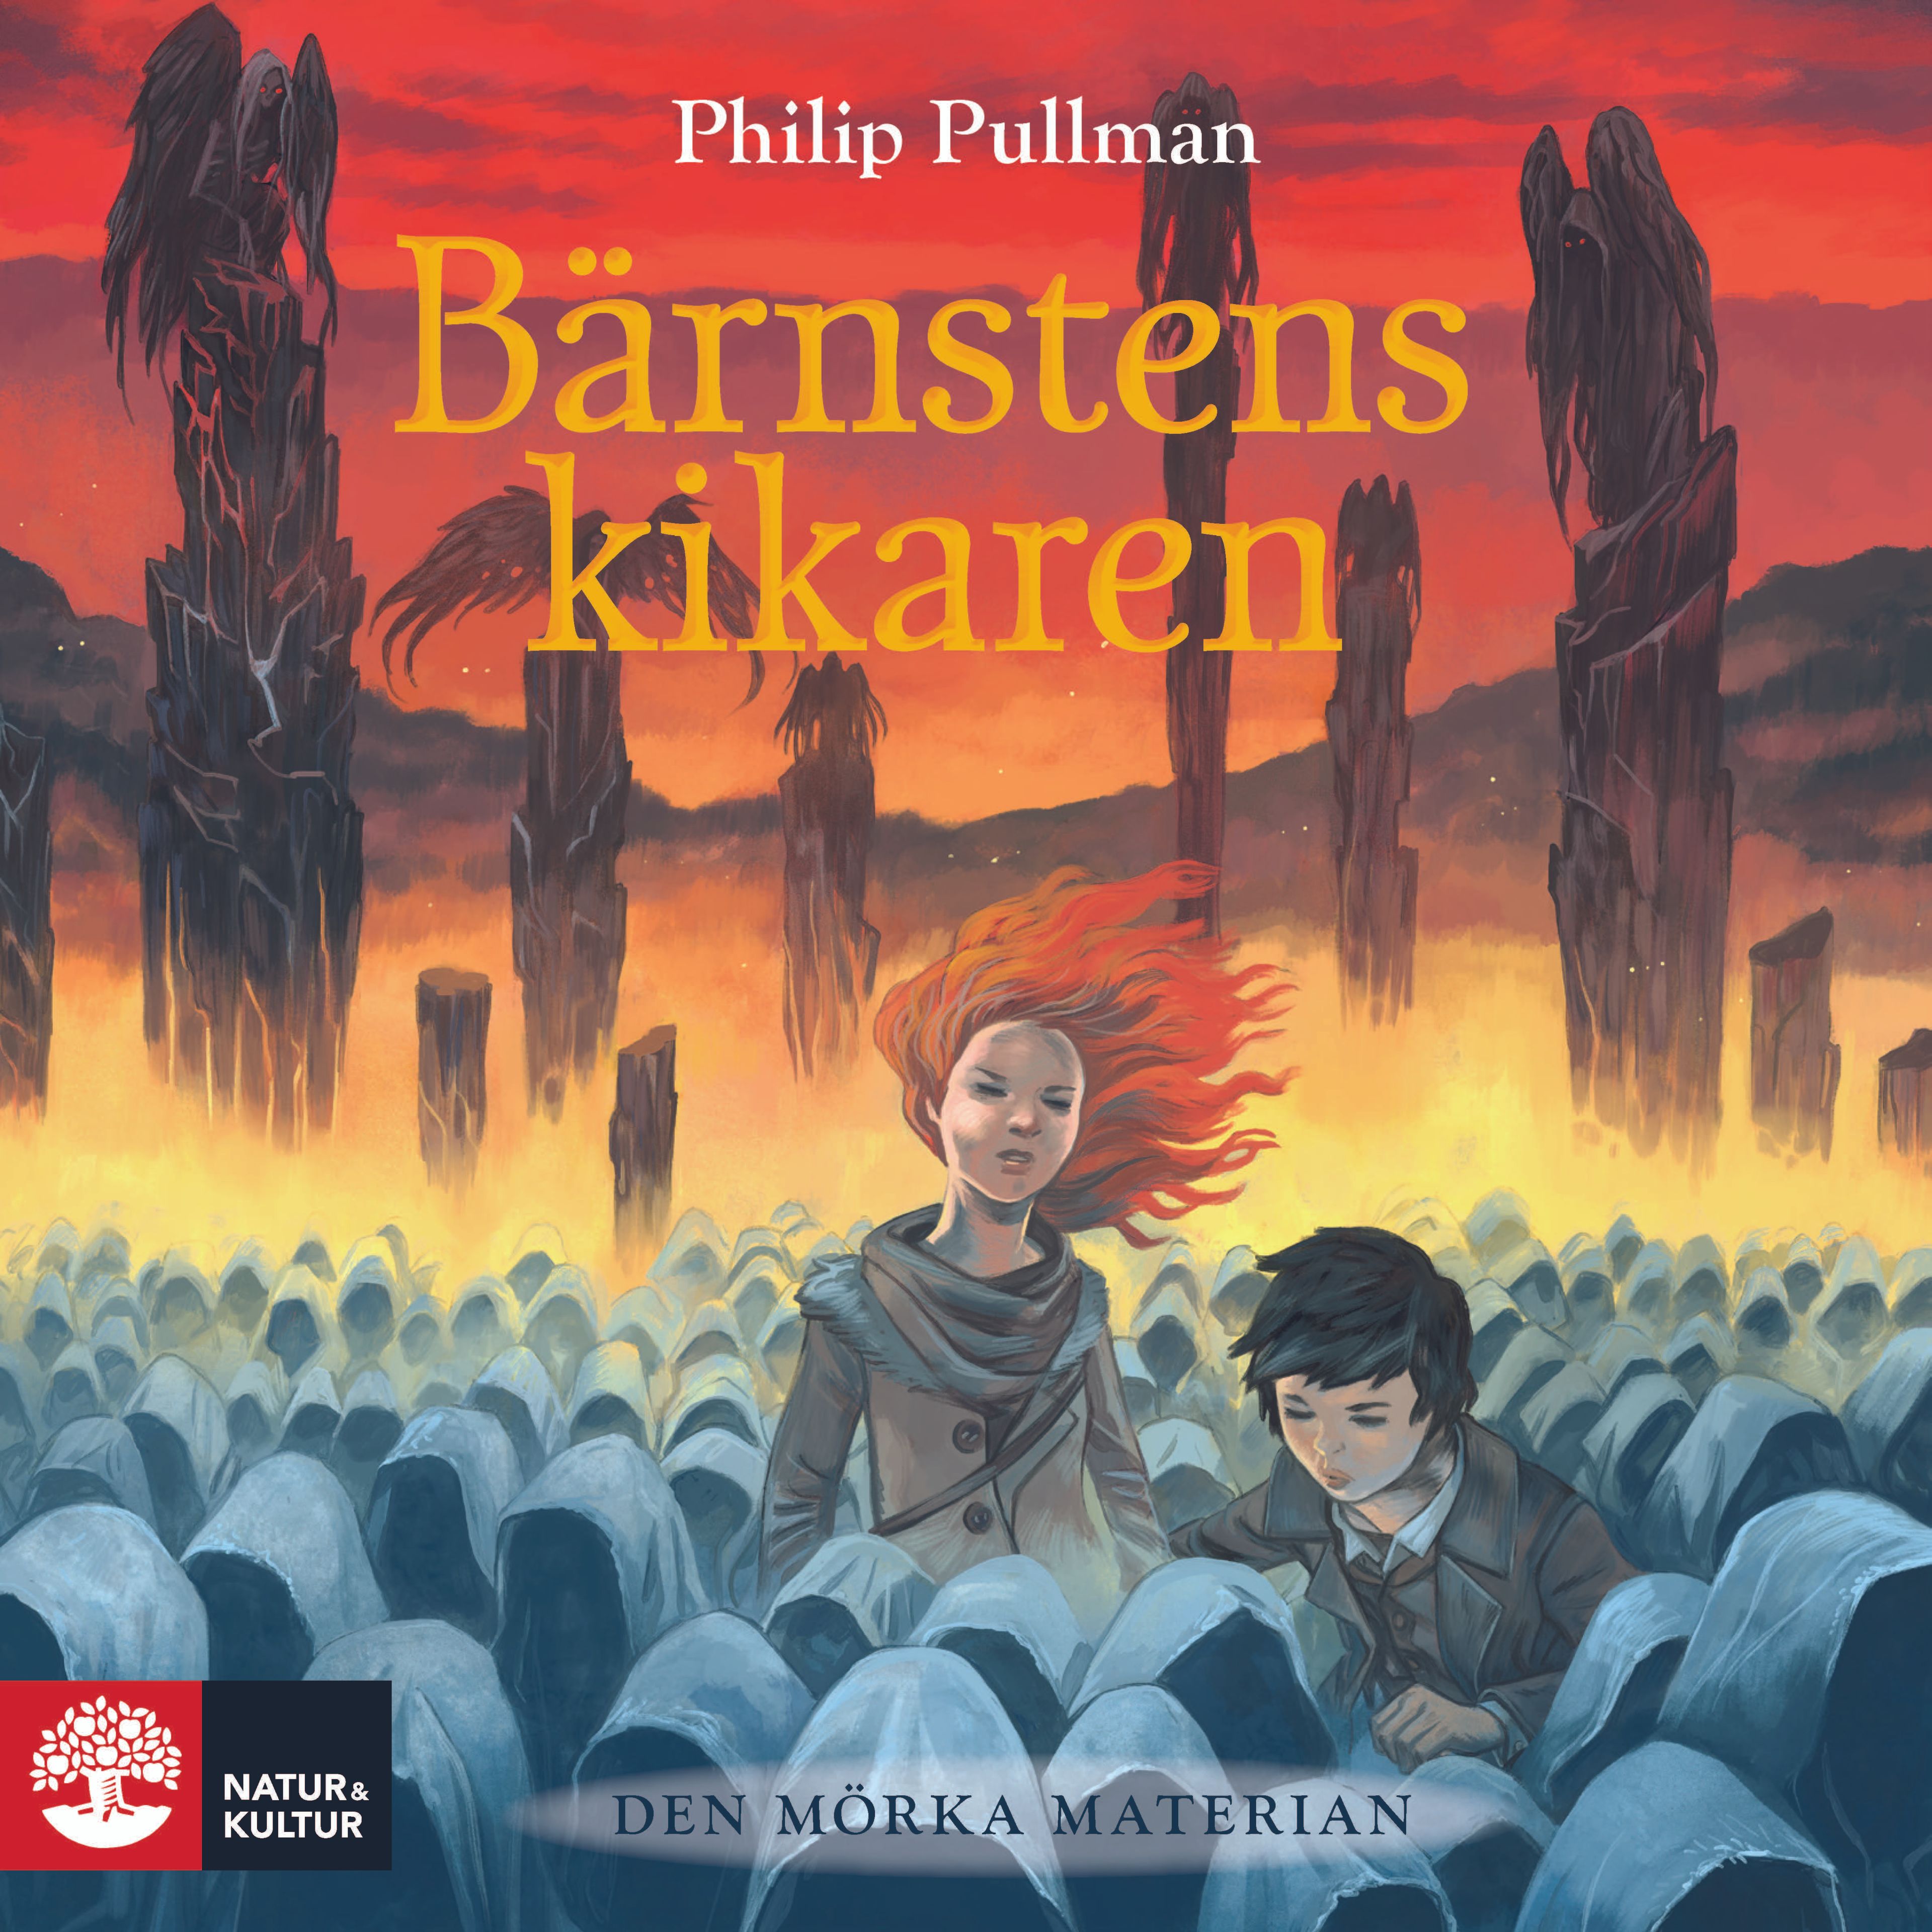 Bärnstenskikaren, audiobook by Philip Pullman